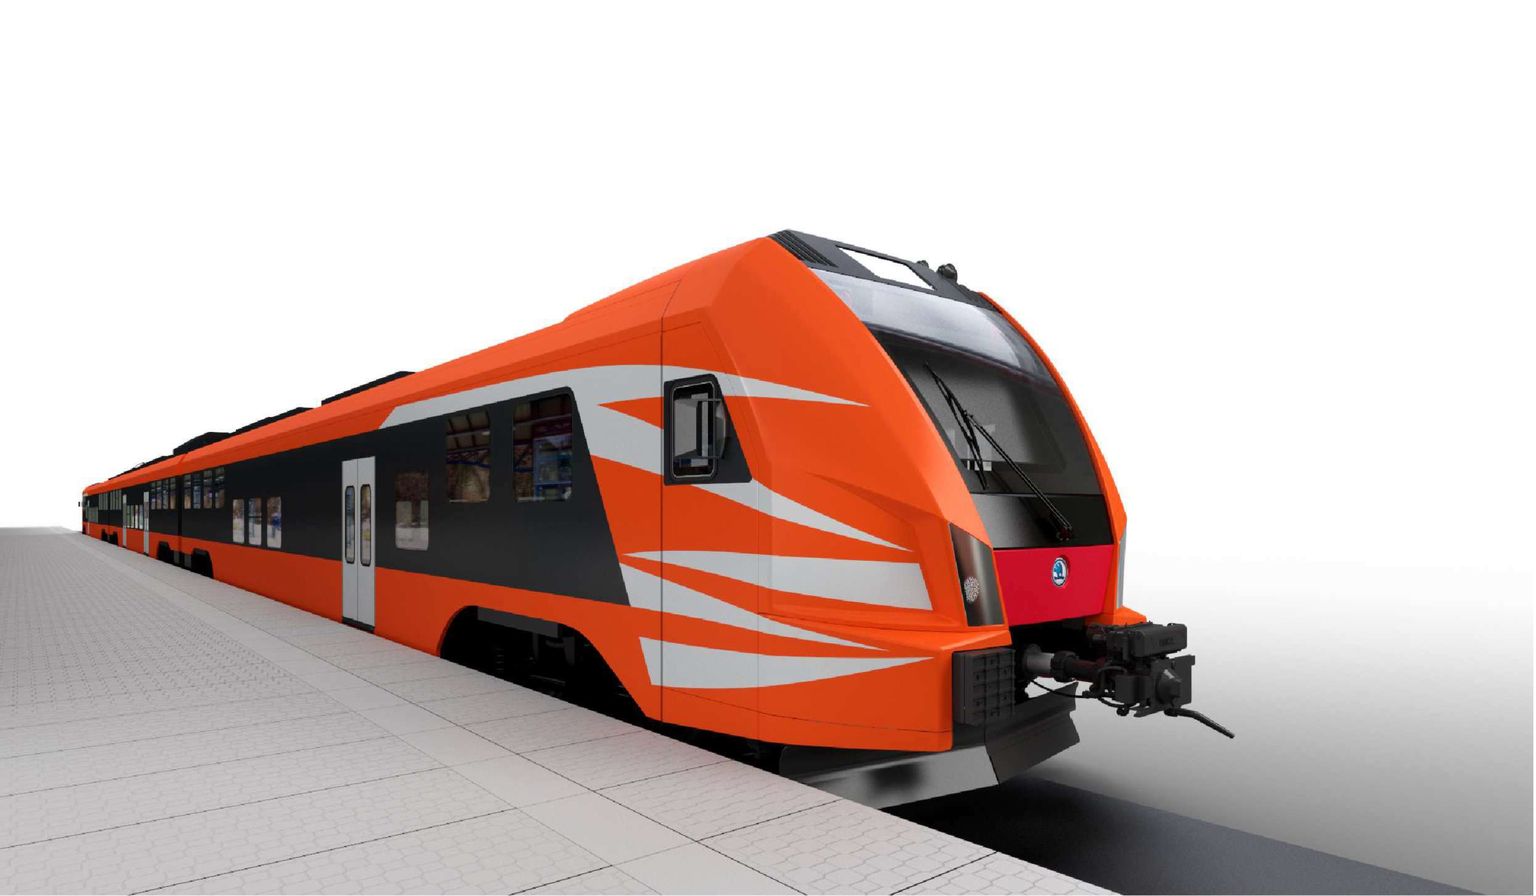 Новые поезда, которые будут построены в Чехии, будут трехвагонными, их общая длина составит 83,18 метра. Длина нынешних четырехвагонных поездов составляет 75 метров.